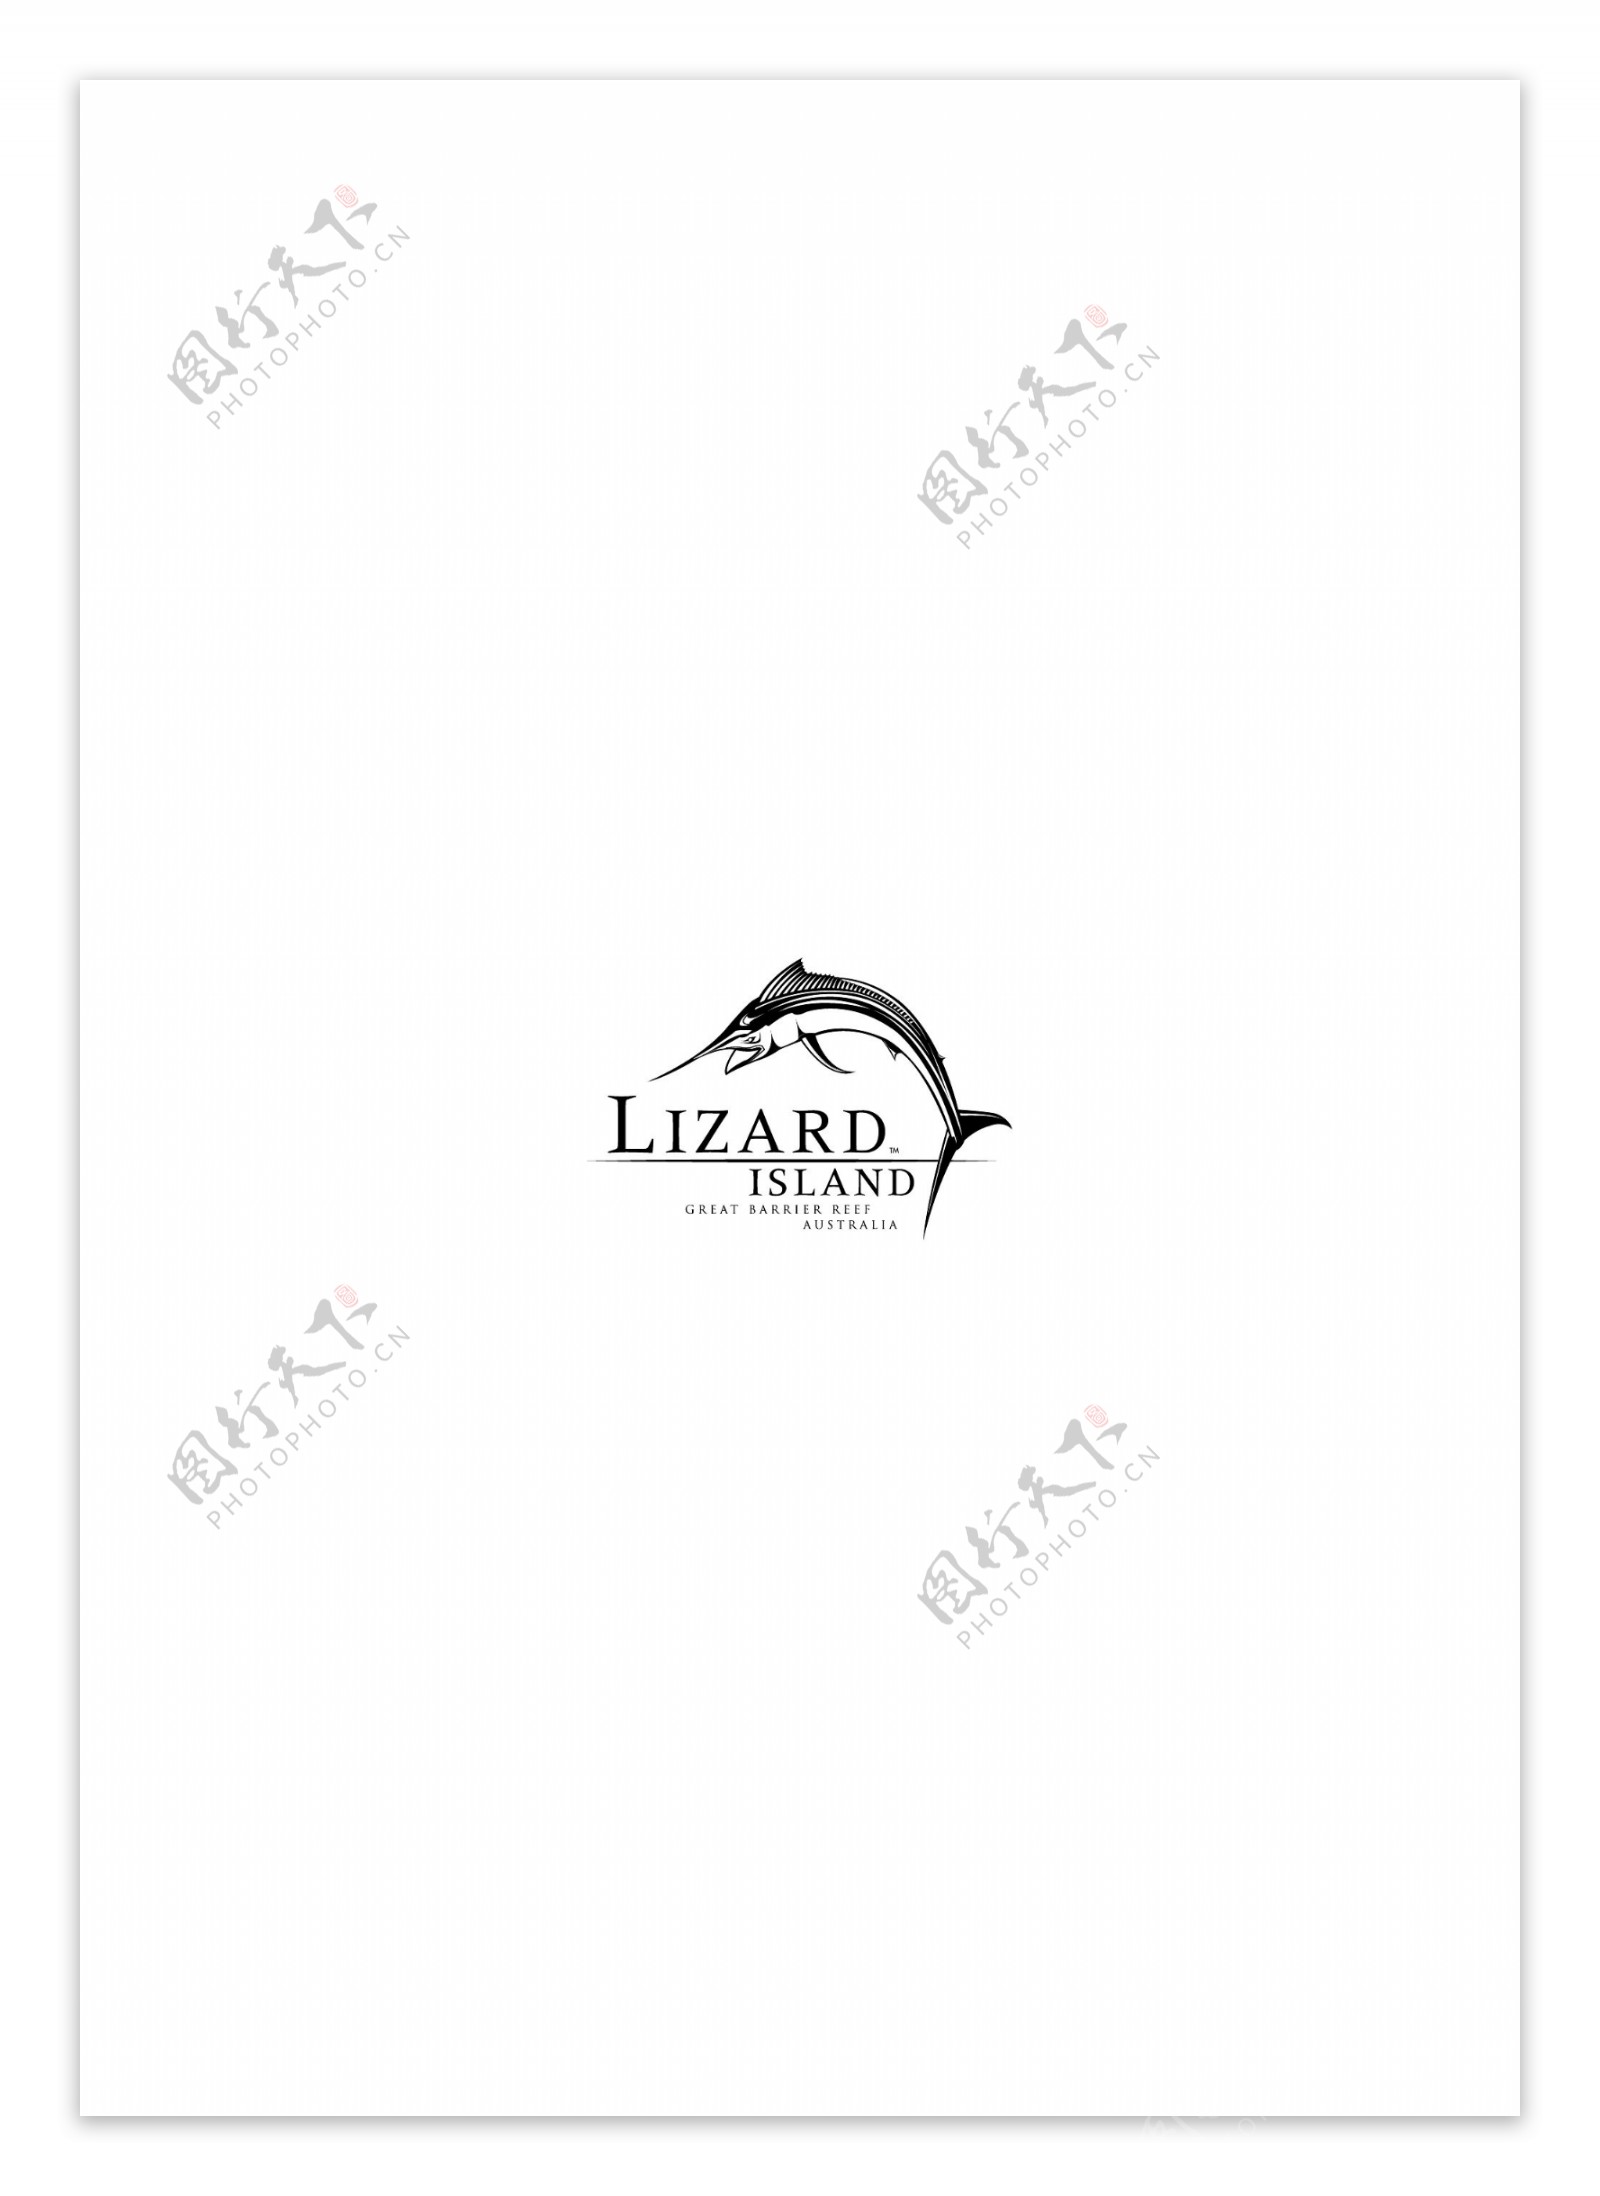 LizardIslandlogo设计欣赏LizardIsland著名酒店LOGO下载标志设计欣赏